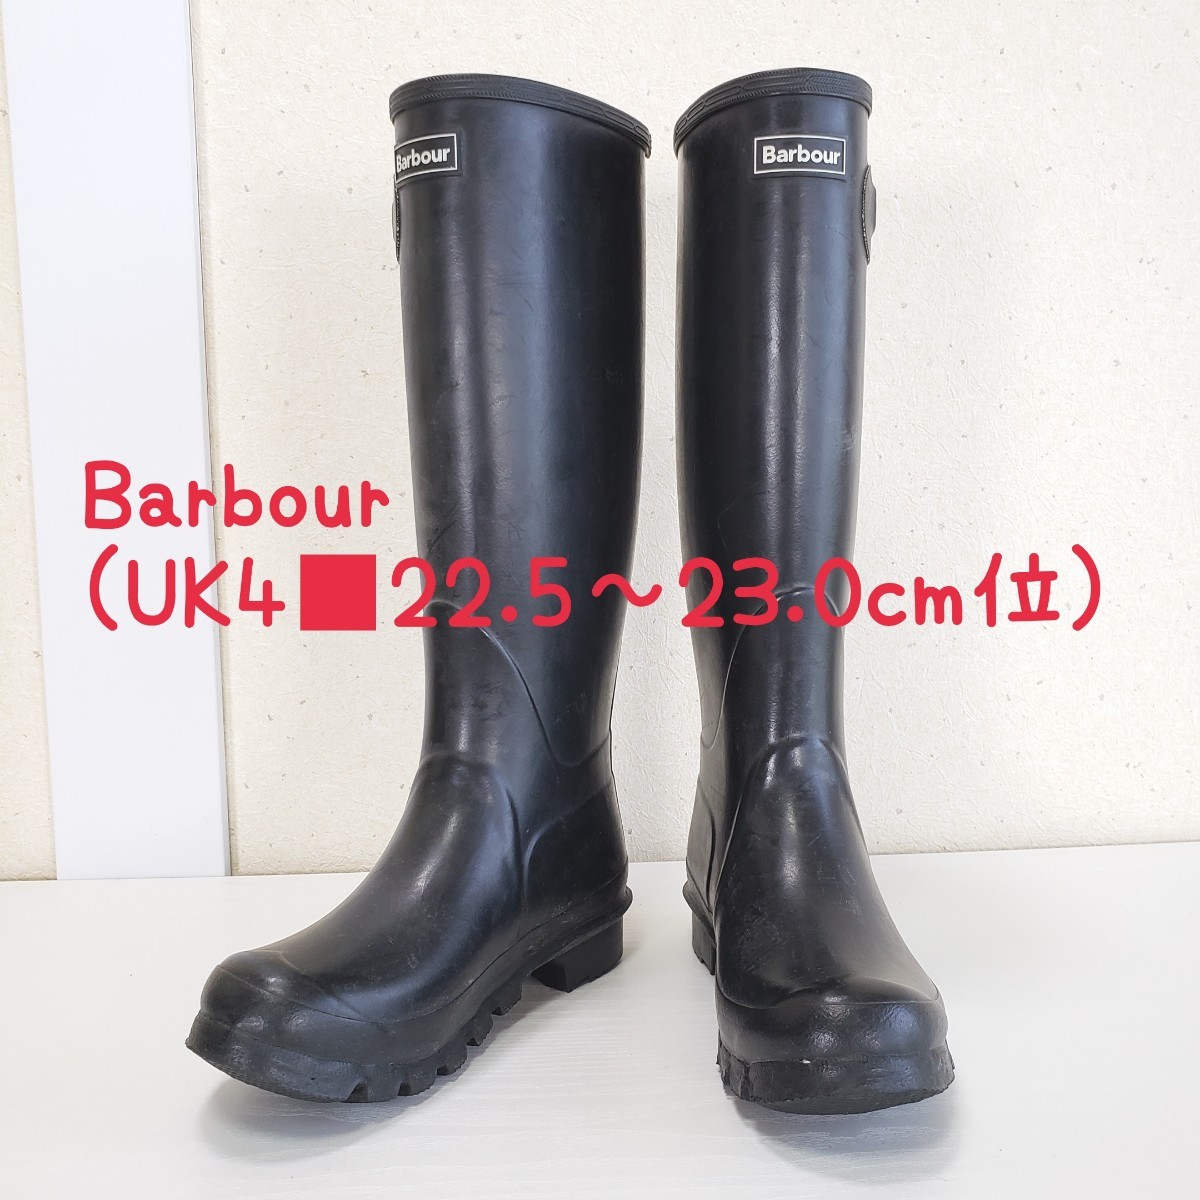 特価 極上品◆Barbour バブアー レディース(UK4■22.5～23.0cm位)ブラック/黒 長靴 レインブーツ 23.0cm